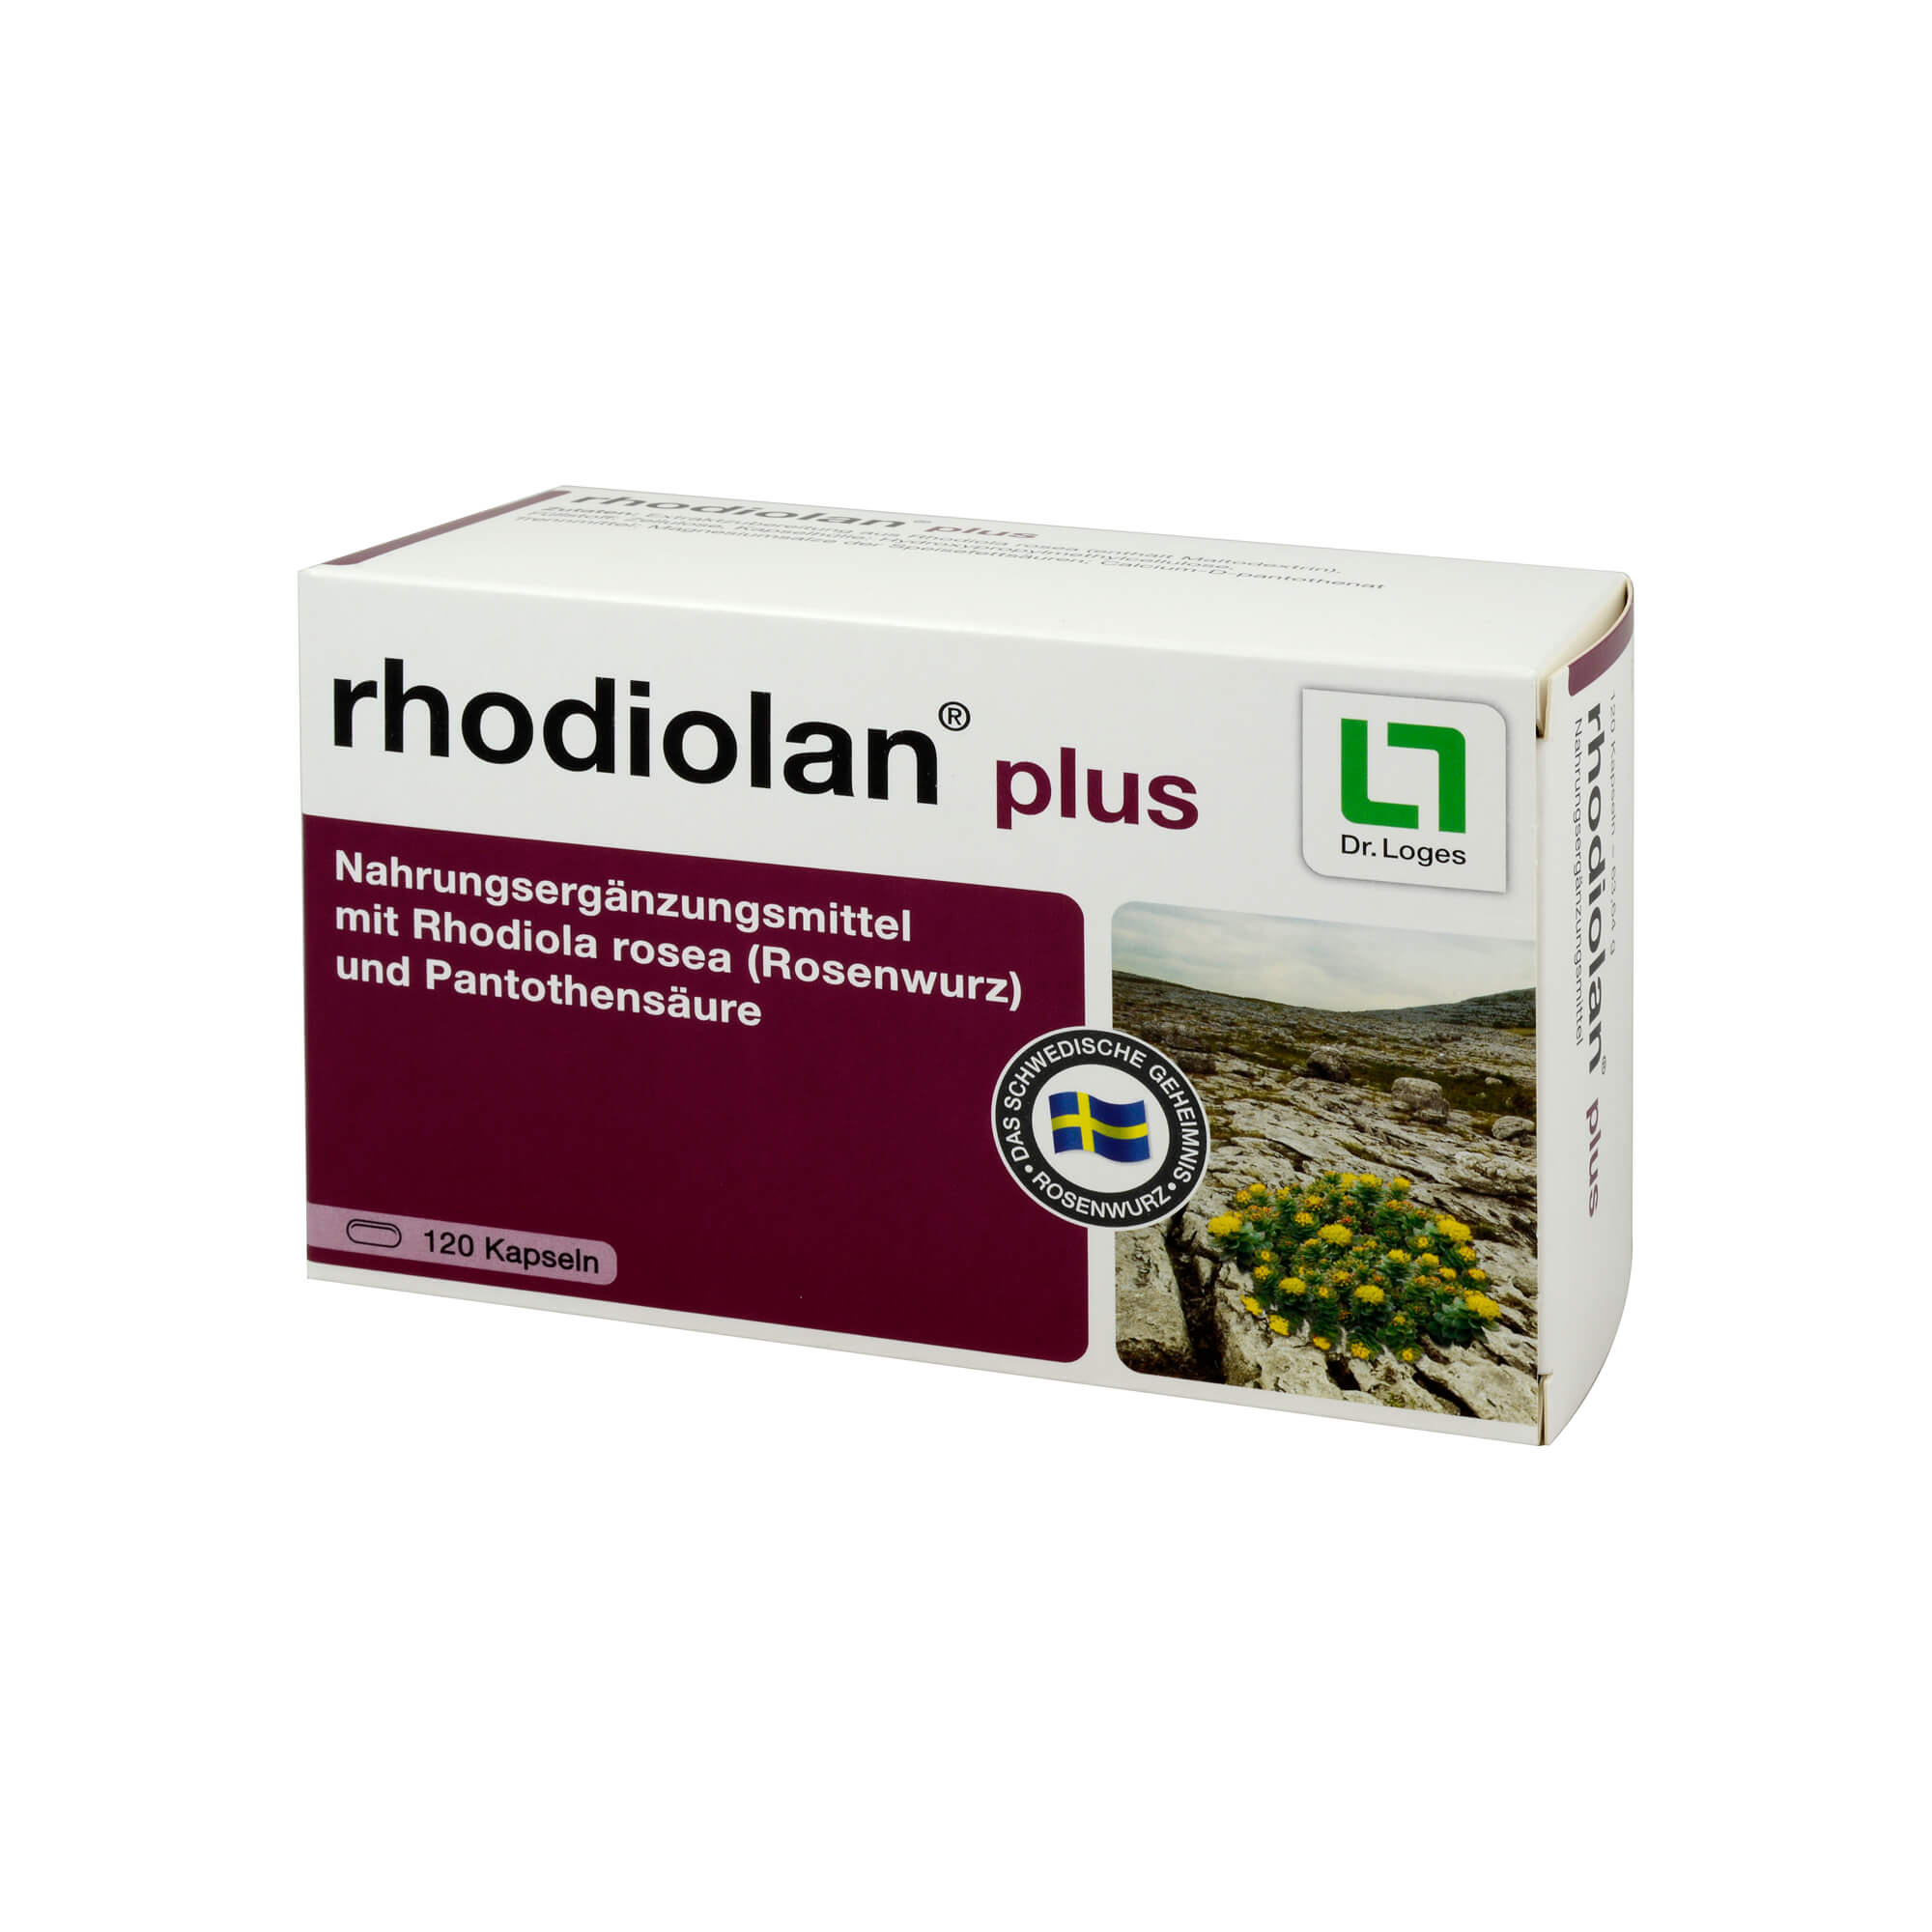 Nahrungsergänzungsmittel mit Rhodiola rosea (Rosenwurz) und Pantothensäure.